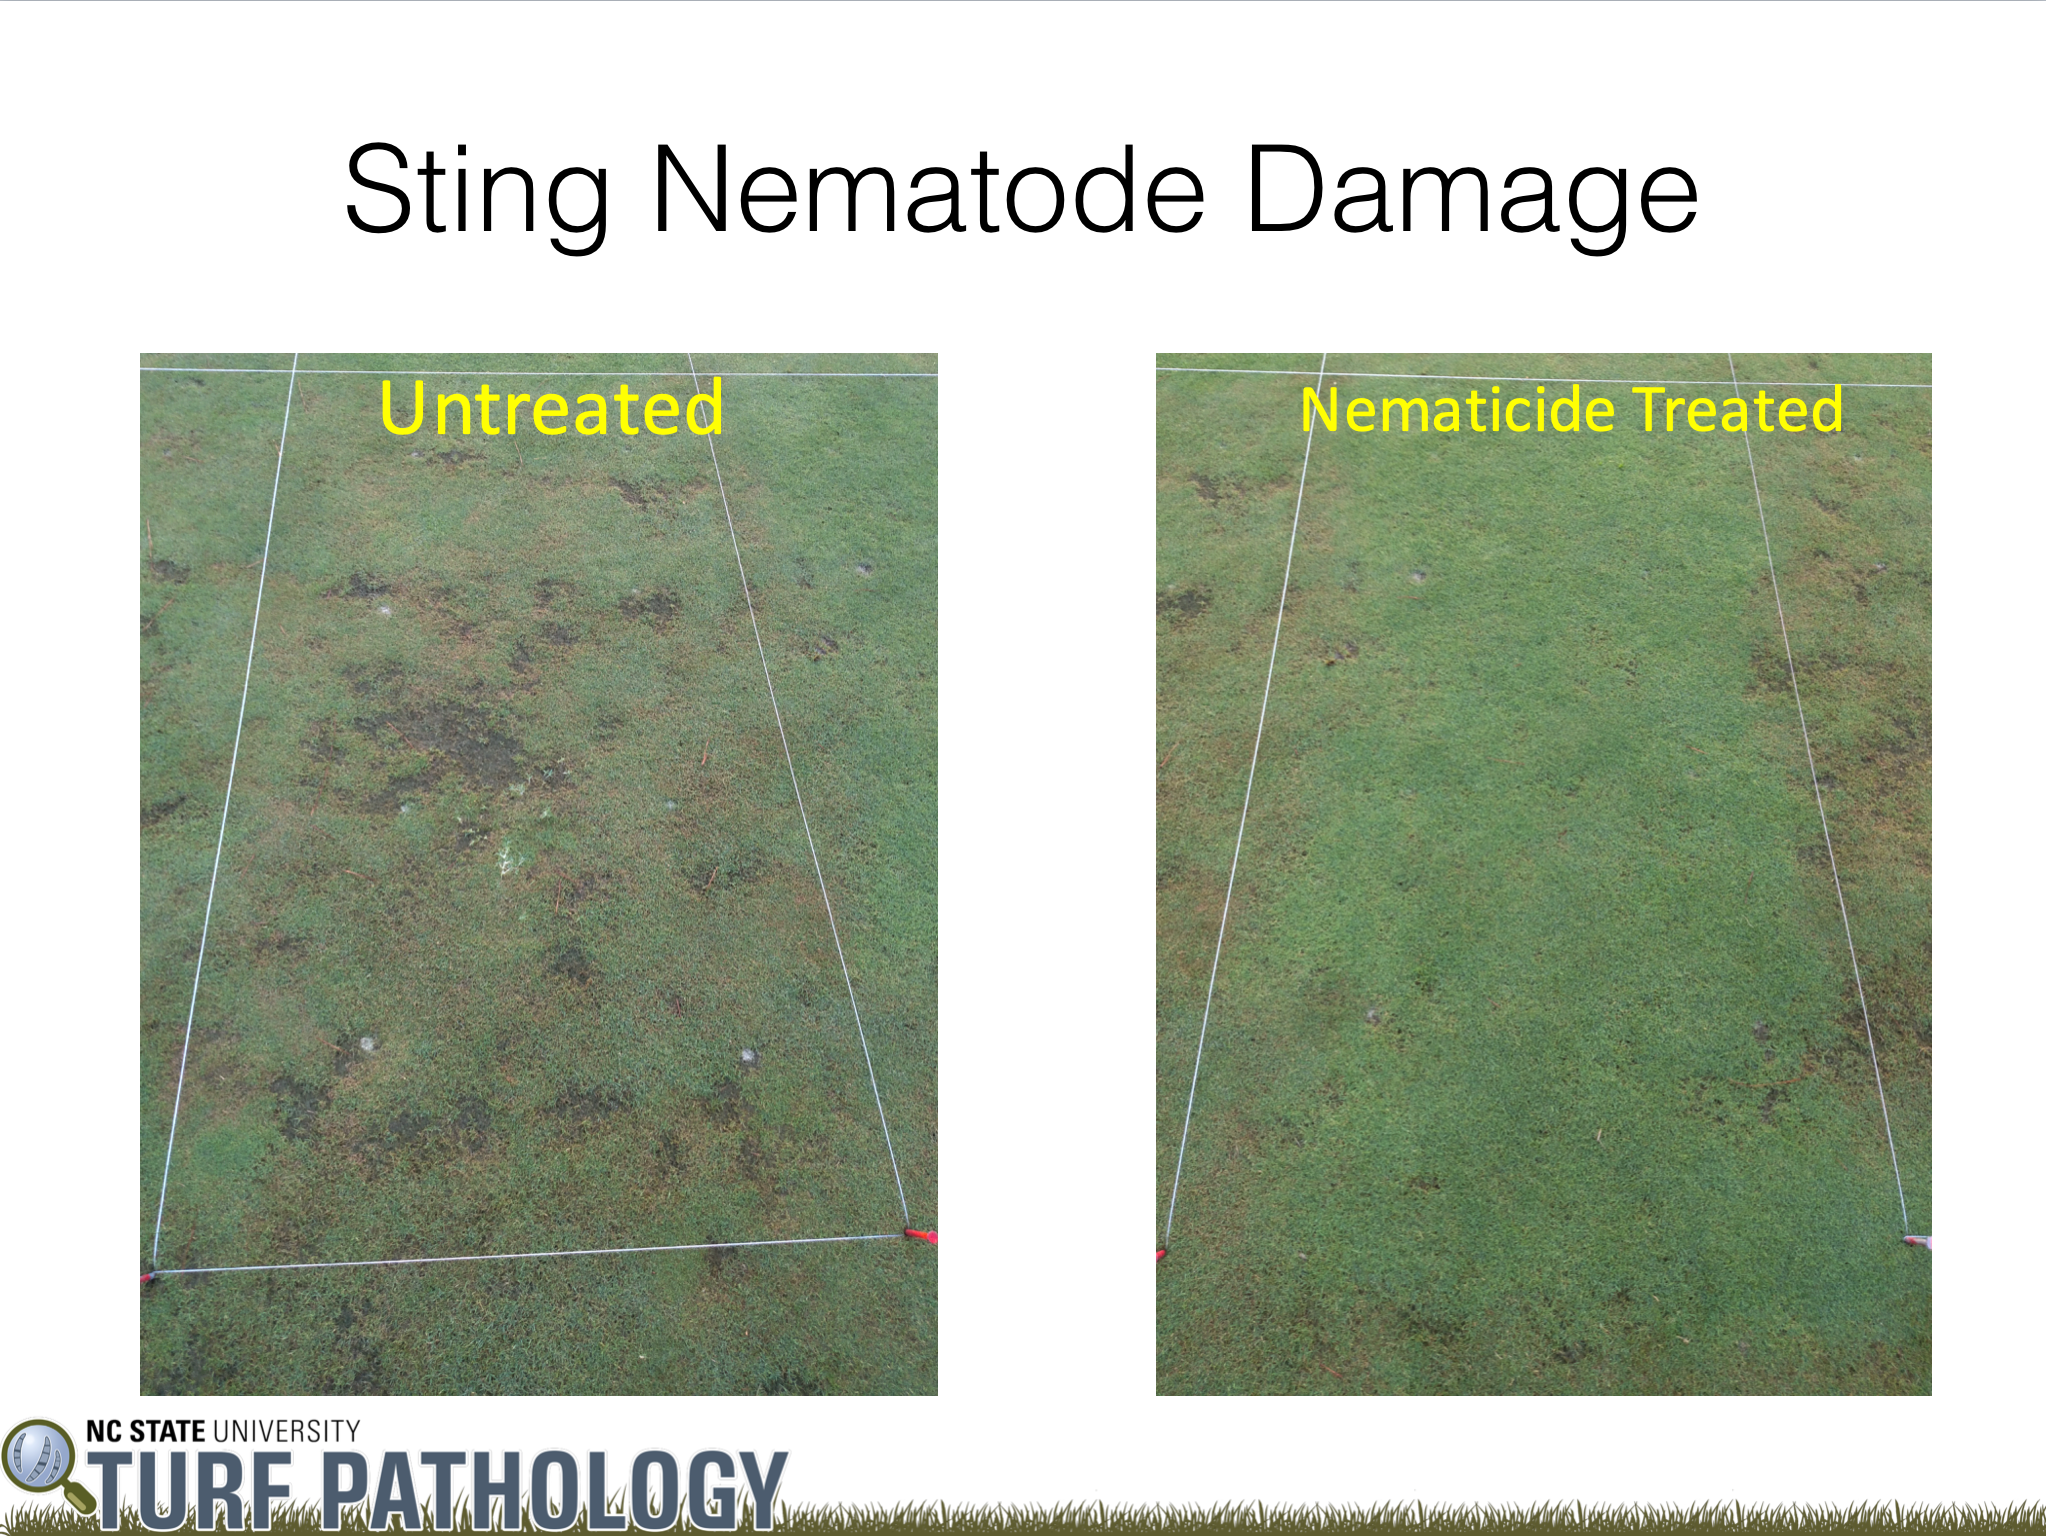 Sting nematode damage image